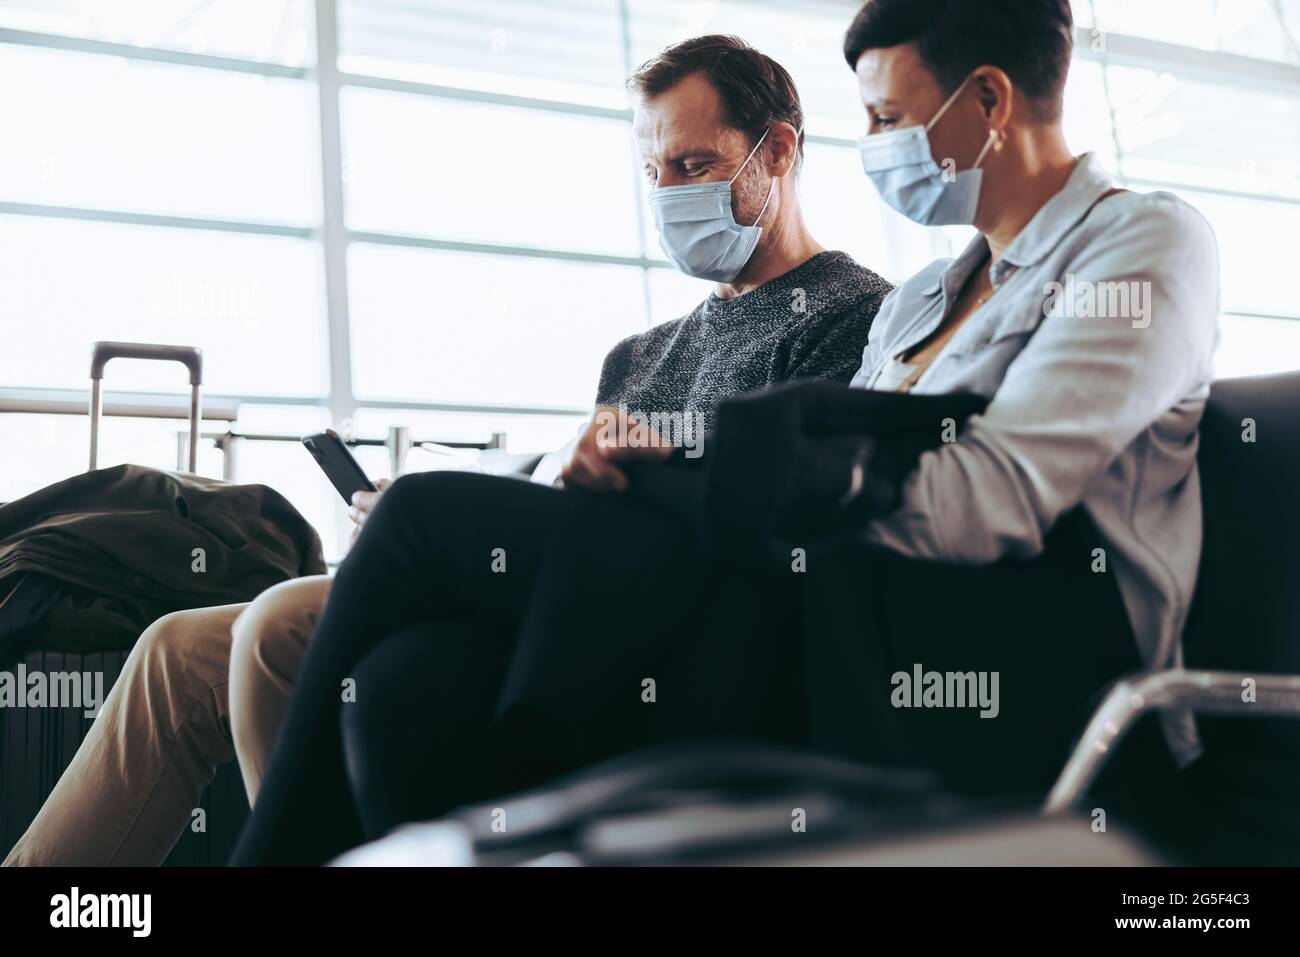 Mann überprüft während einer Pandemie das Handy, während eine Frau am Abflugbereich des Flughafens sitzt. Paar sitzt am Flughafen mit Gesichtsmaske und Smartphone. Stockfoto